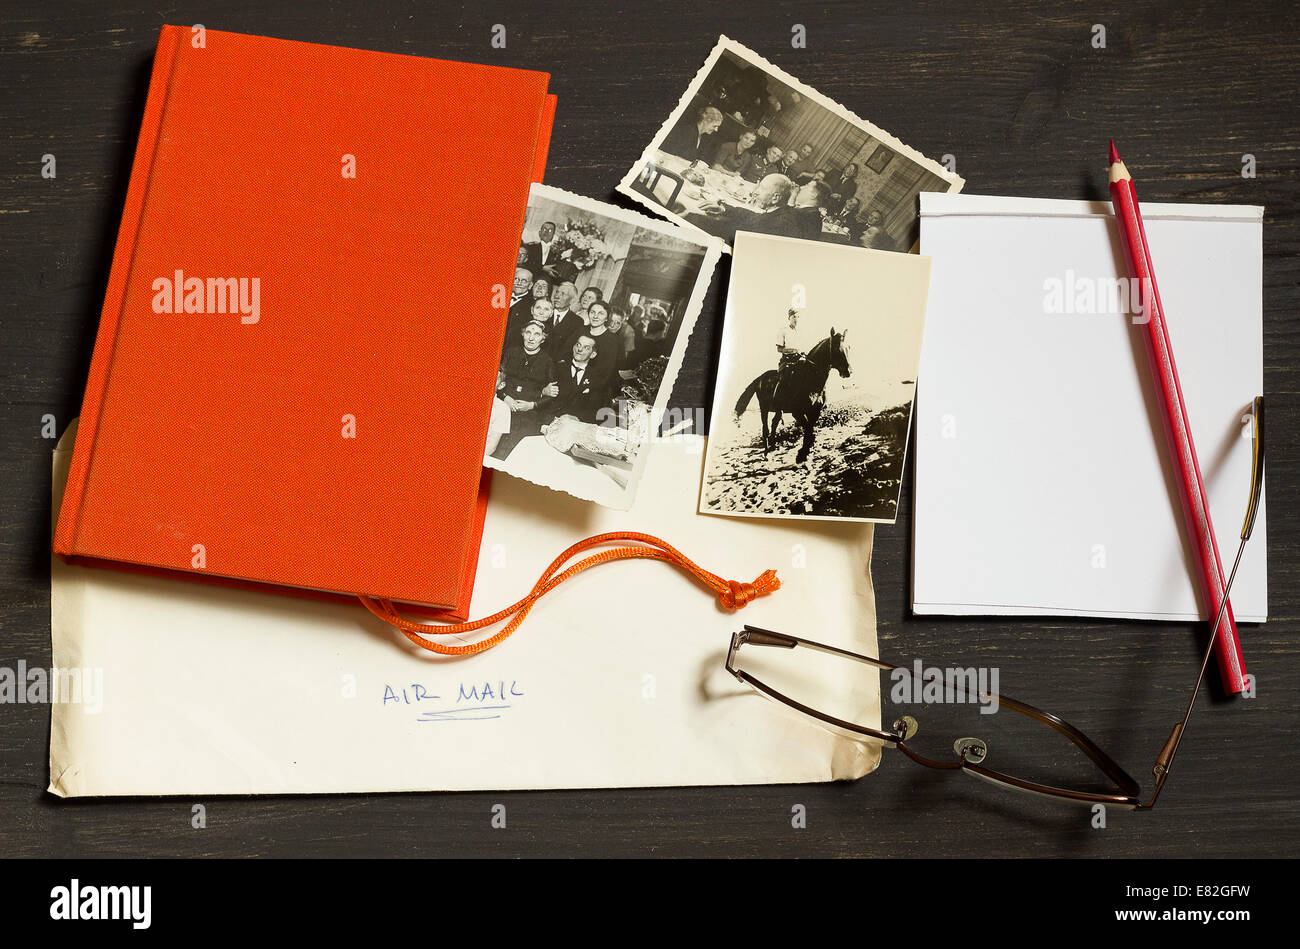 La historia de la familia, la investigación genealógica, antiguas fotografías desde la Segunda Guerra Mundial, el correo aéreo, libro rojo, el Bloc de notas con lápices de colores y gafas de lectura Foto de stock